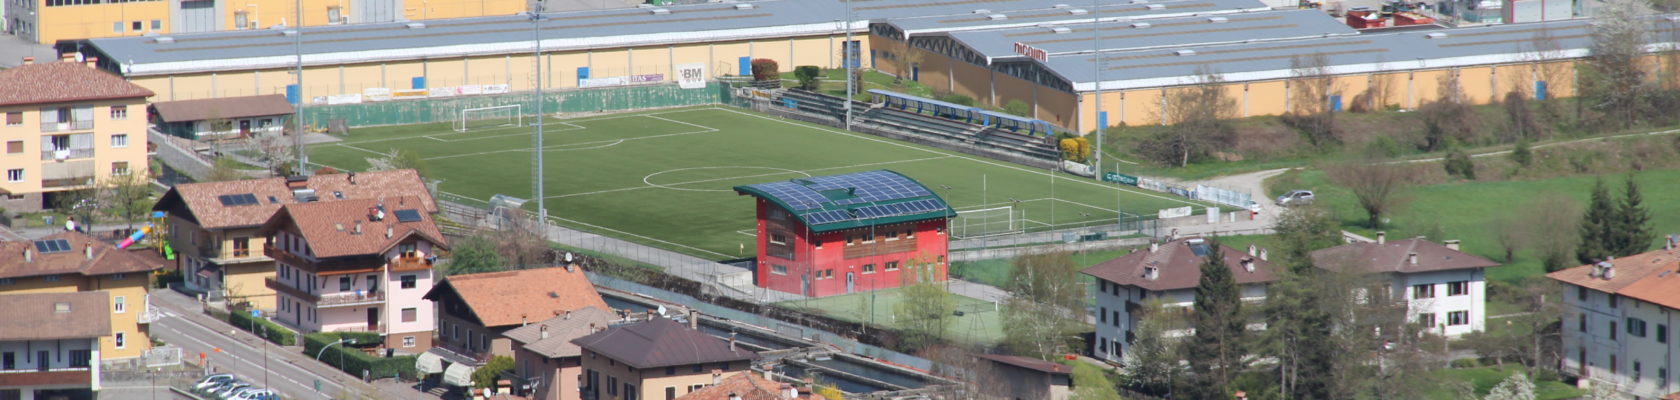 Impianto fotovoltaico Centro Sportivo di Pieve di Bono